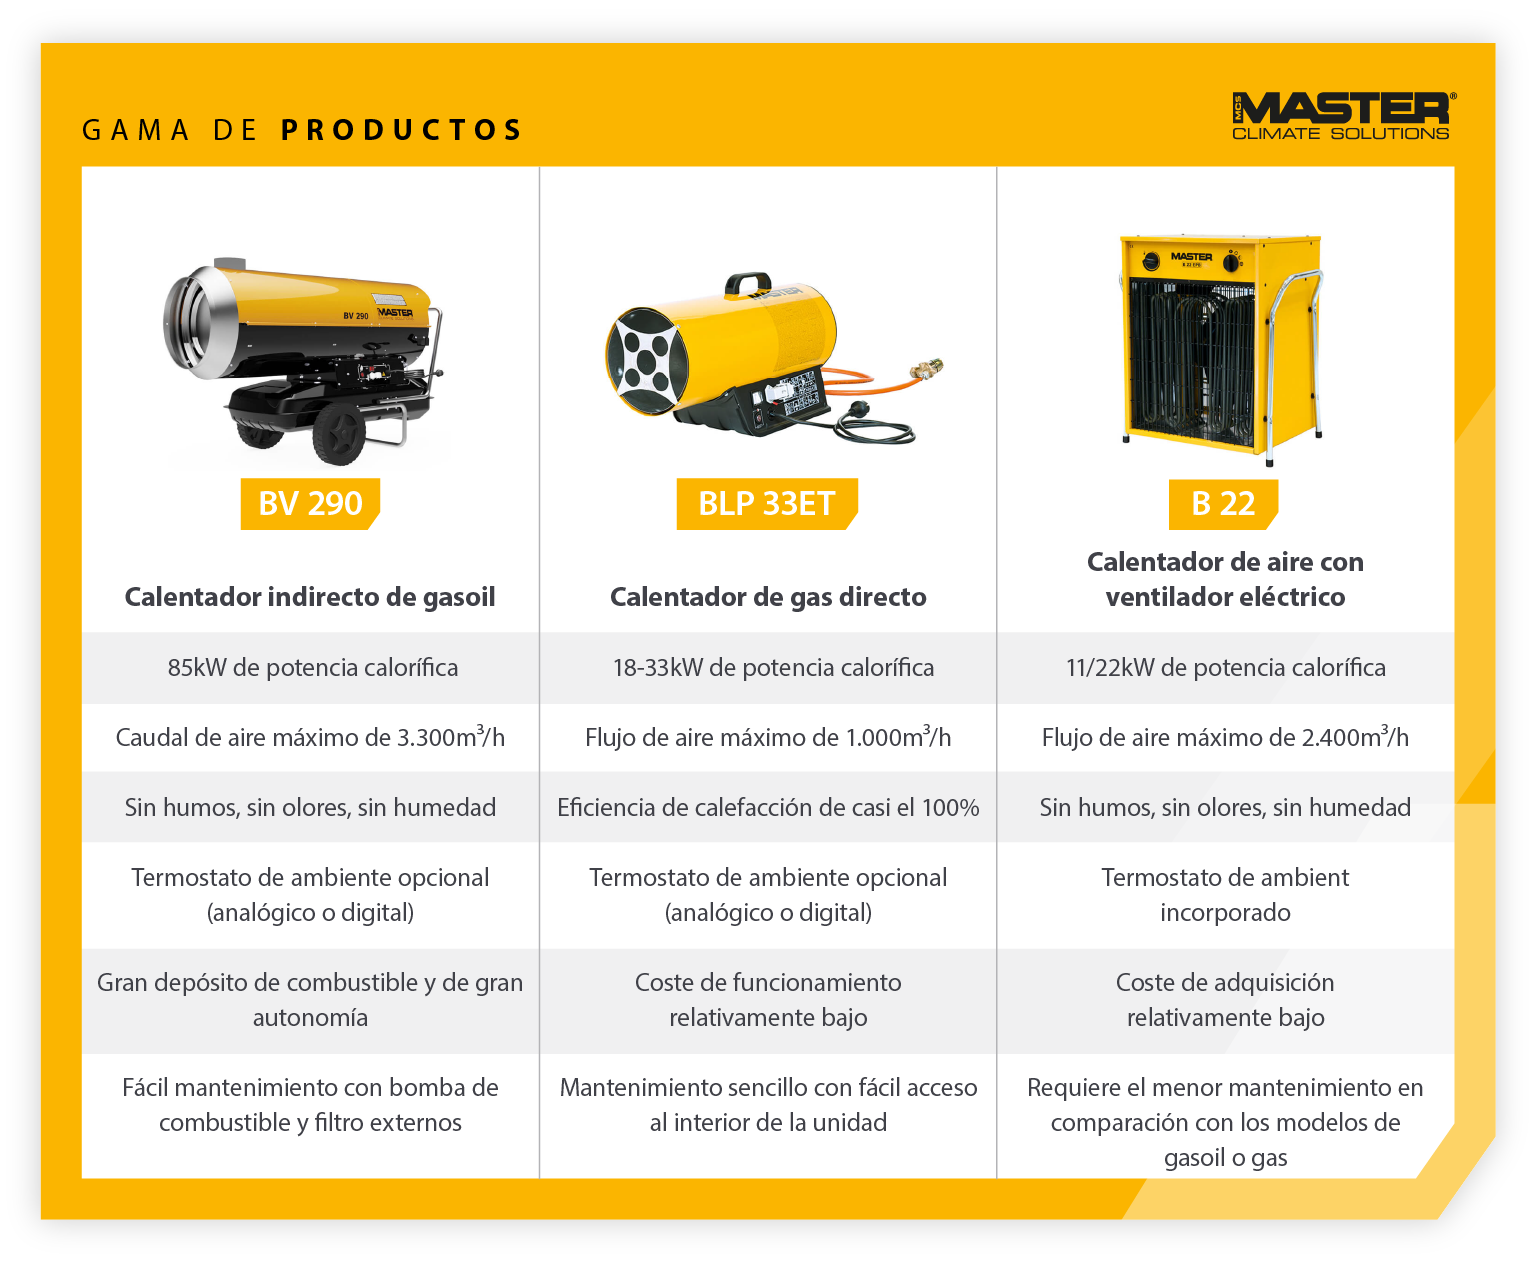 Presentación de producto de la gama de calentadores portátiles Master: características y comparación de los calentadores de gasóleo frente a los calentadores eléctricos: imagen infográfica